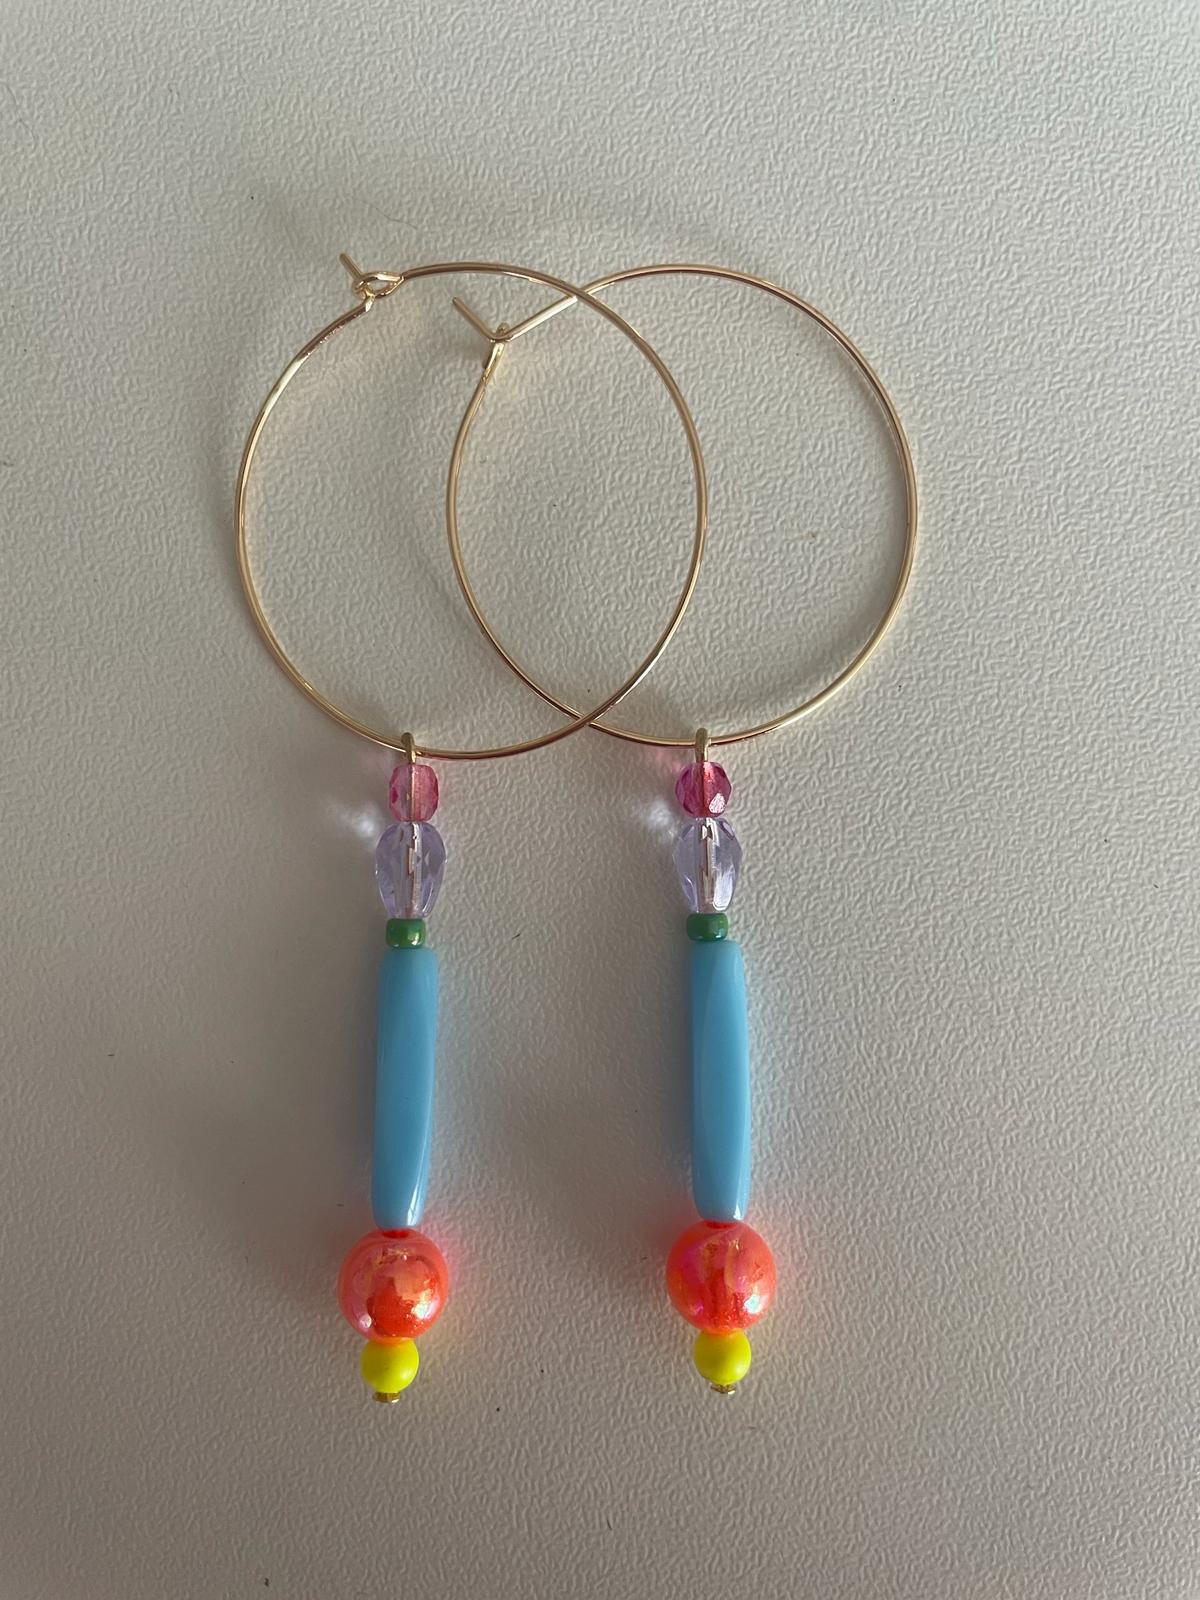 Image of Hoop earrings by Love Beth